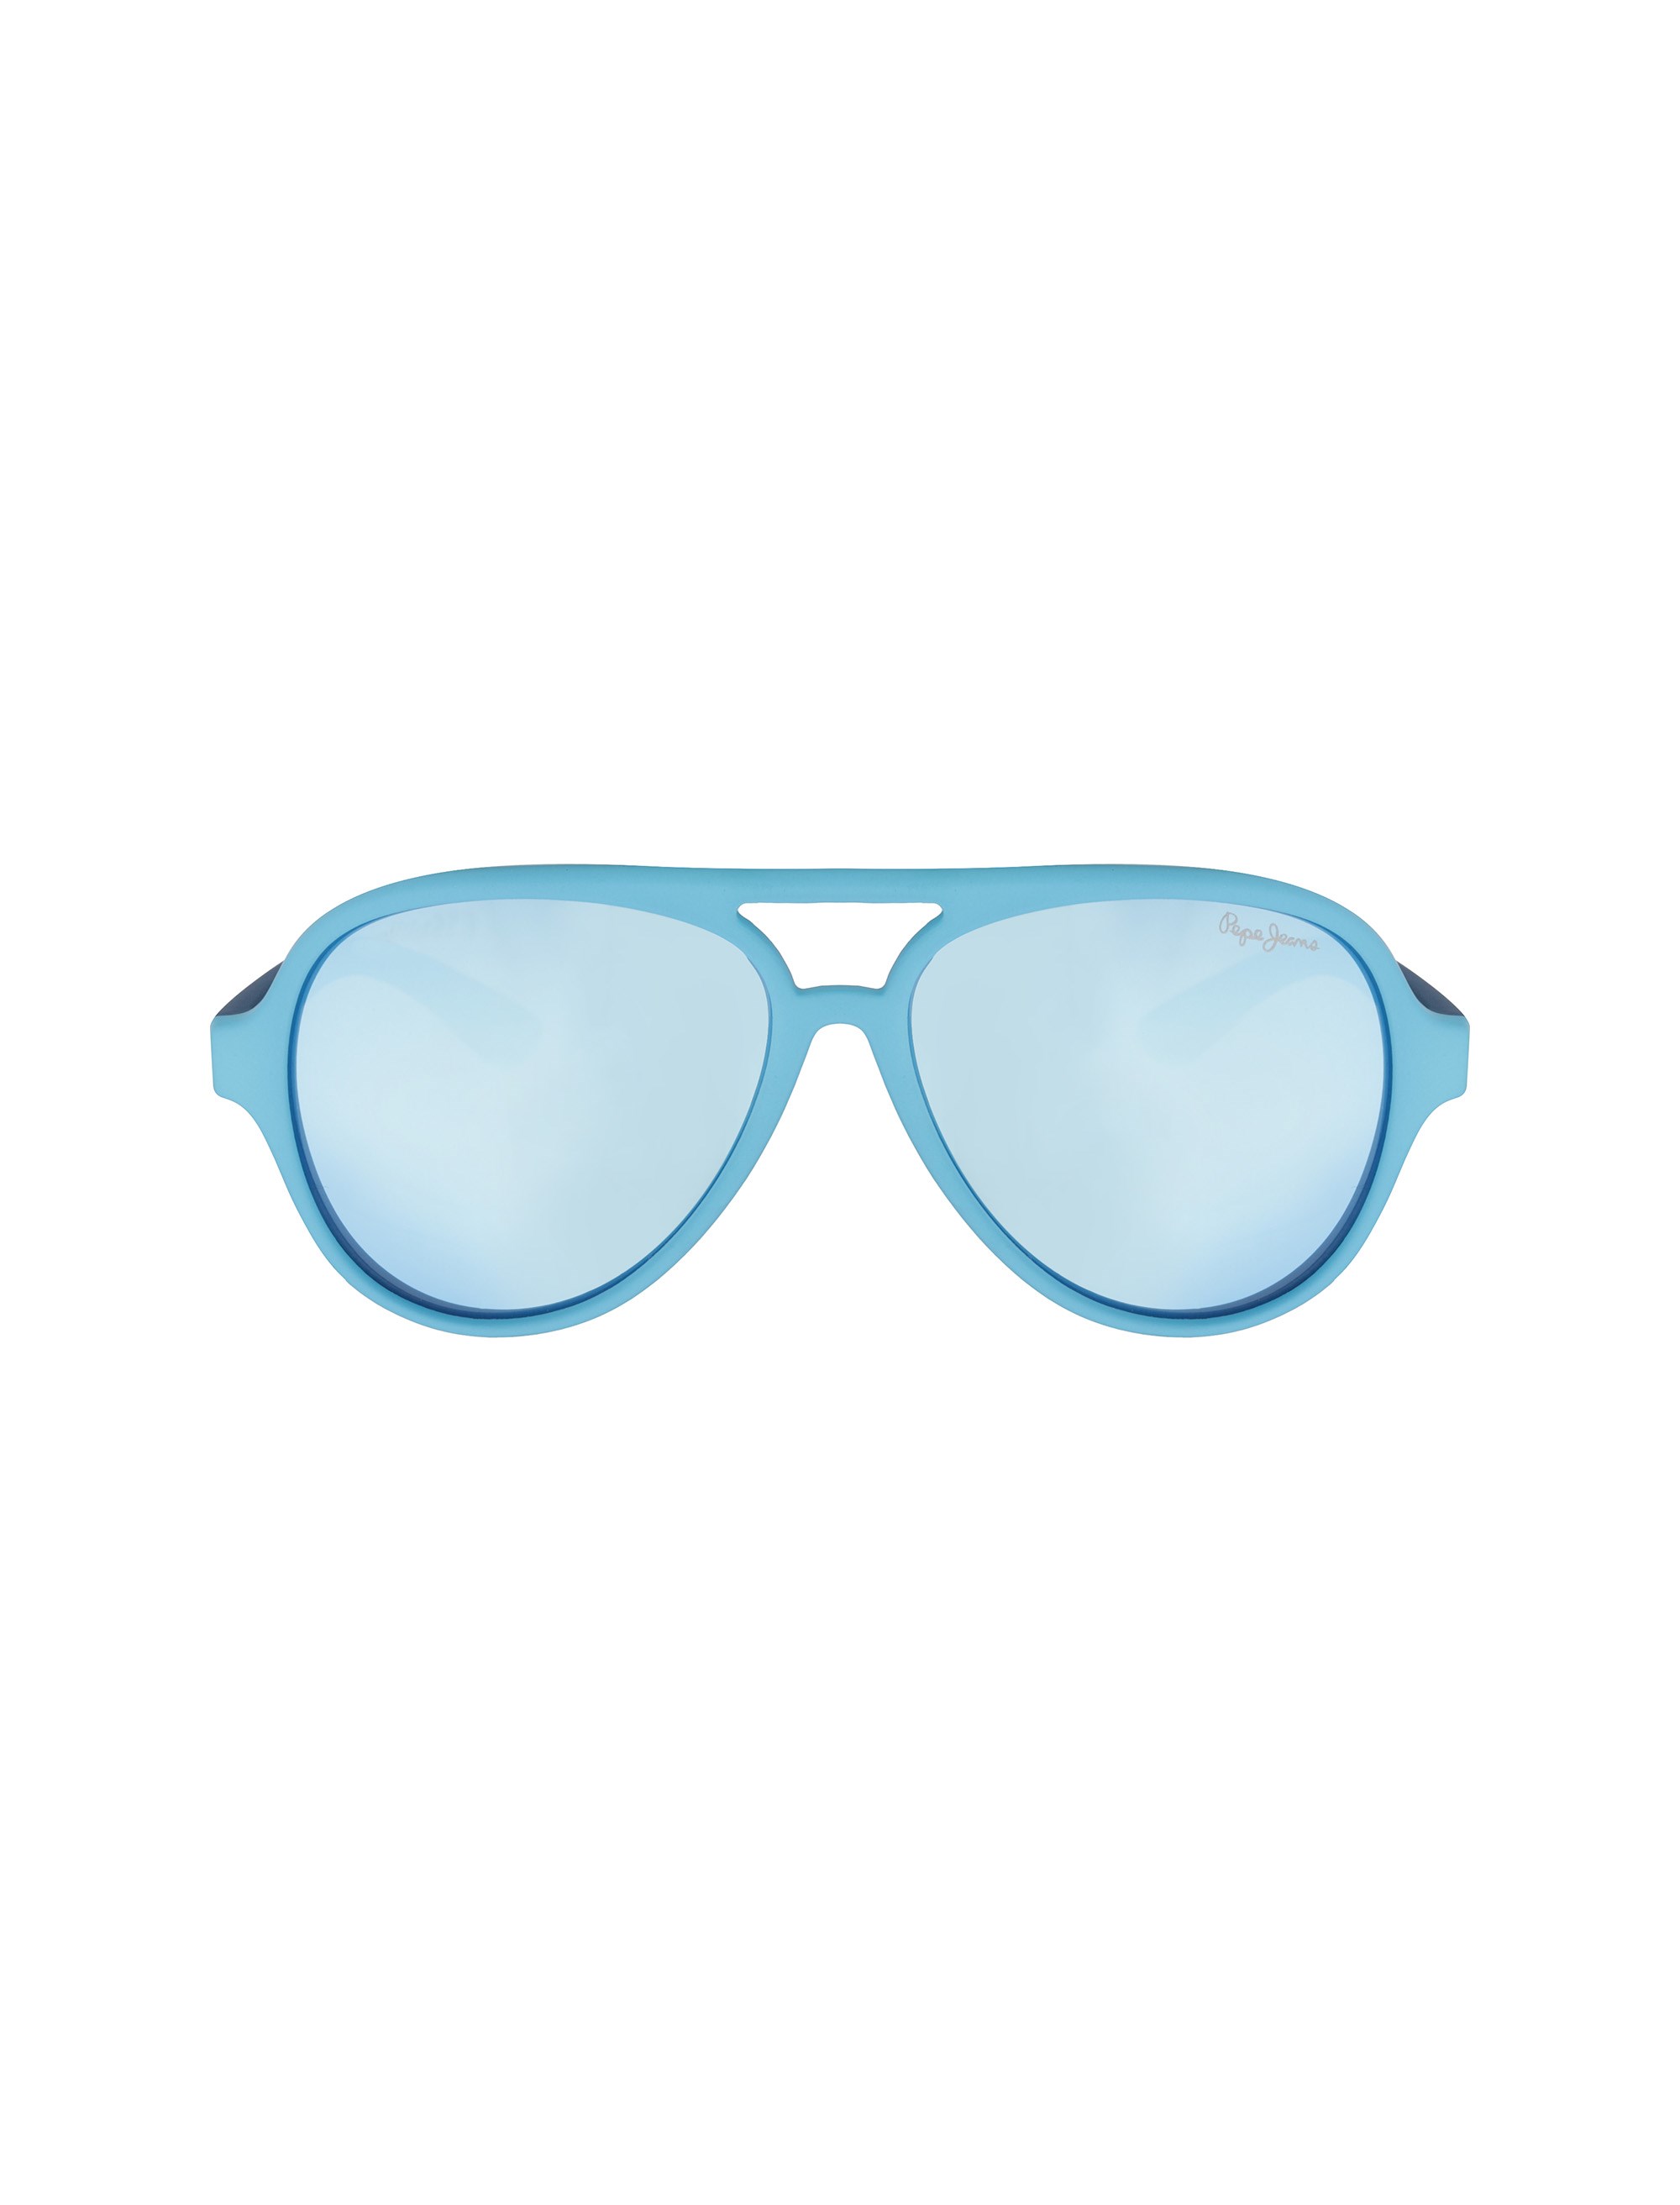 عینک آفتابی خلبانی بچگانه - پپه جینز